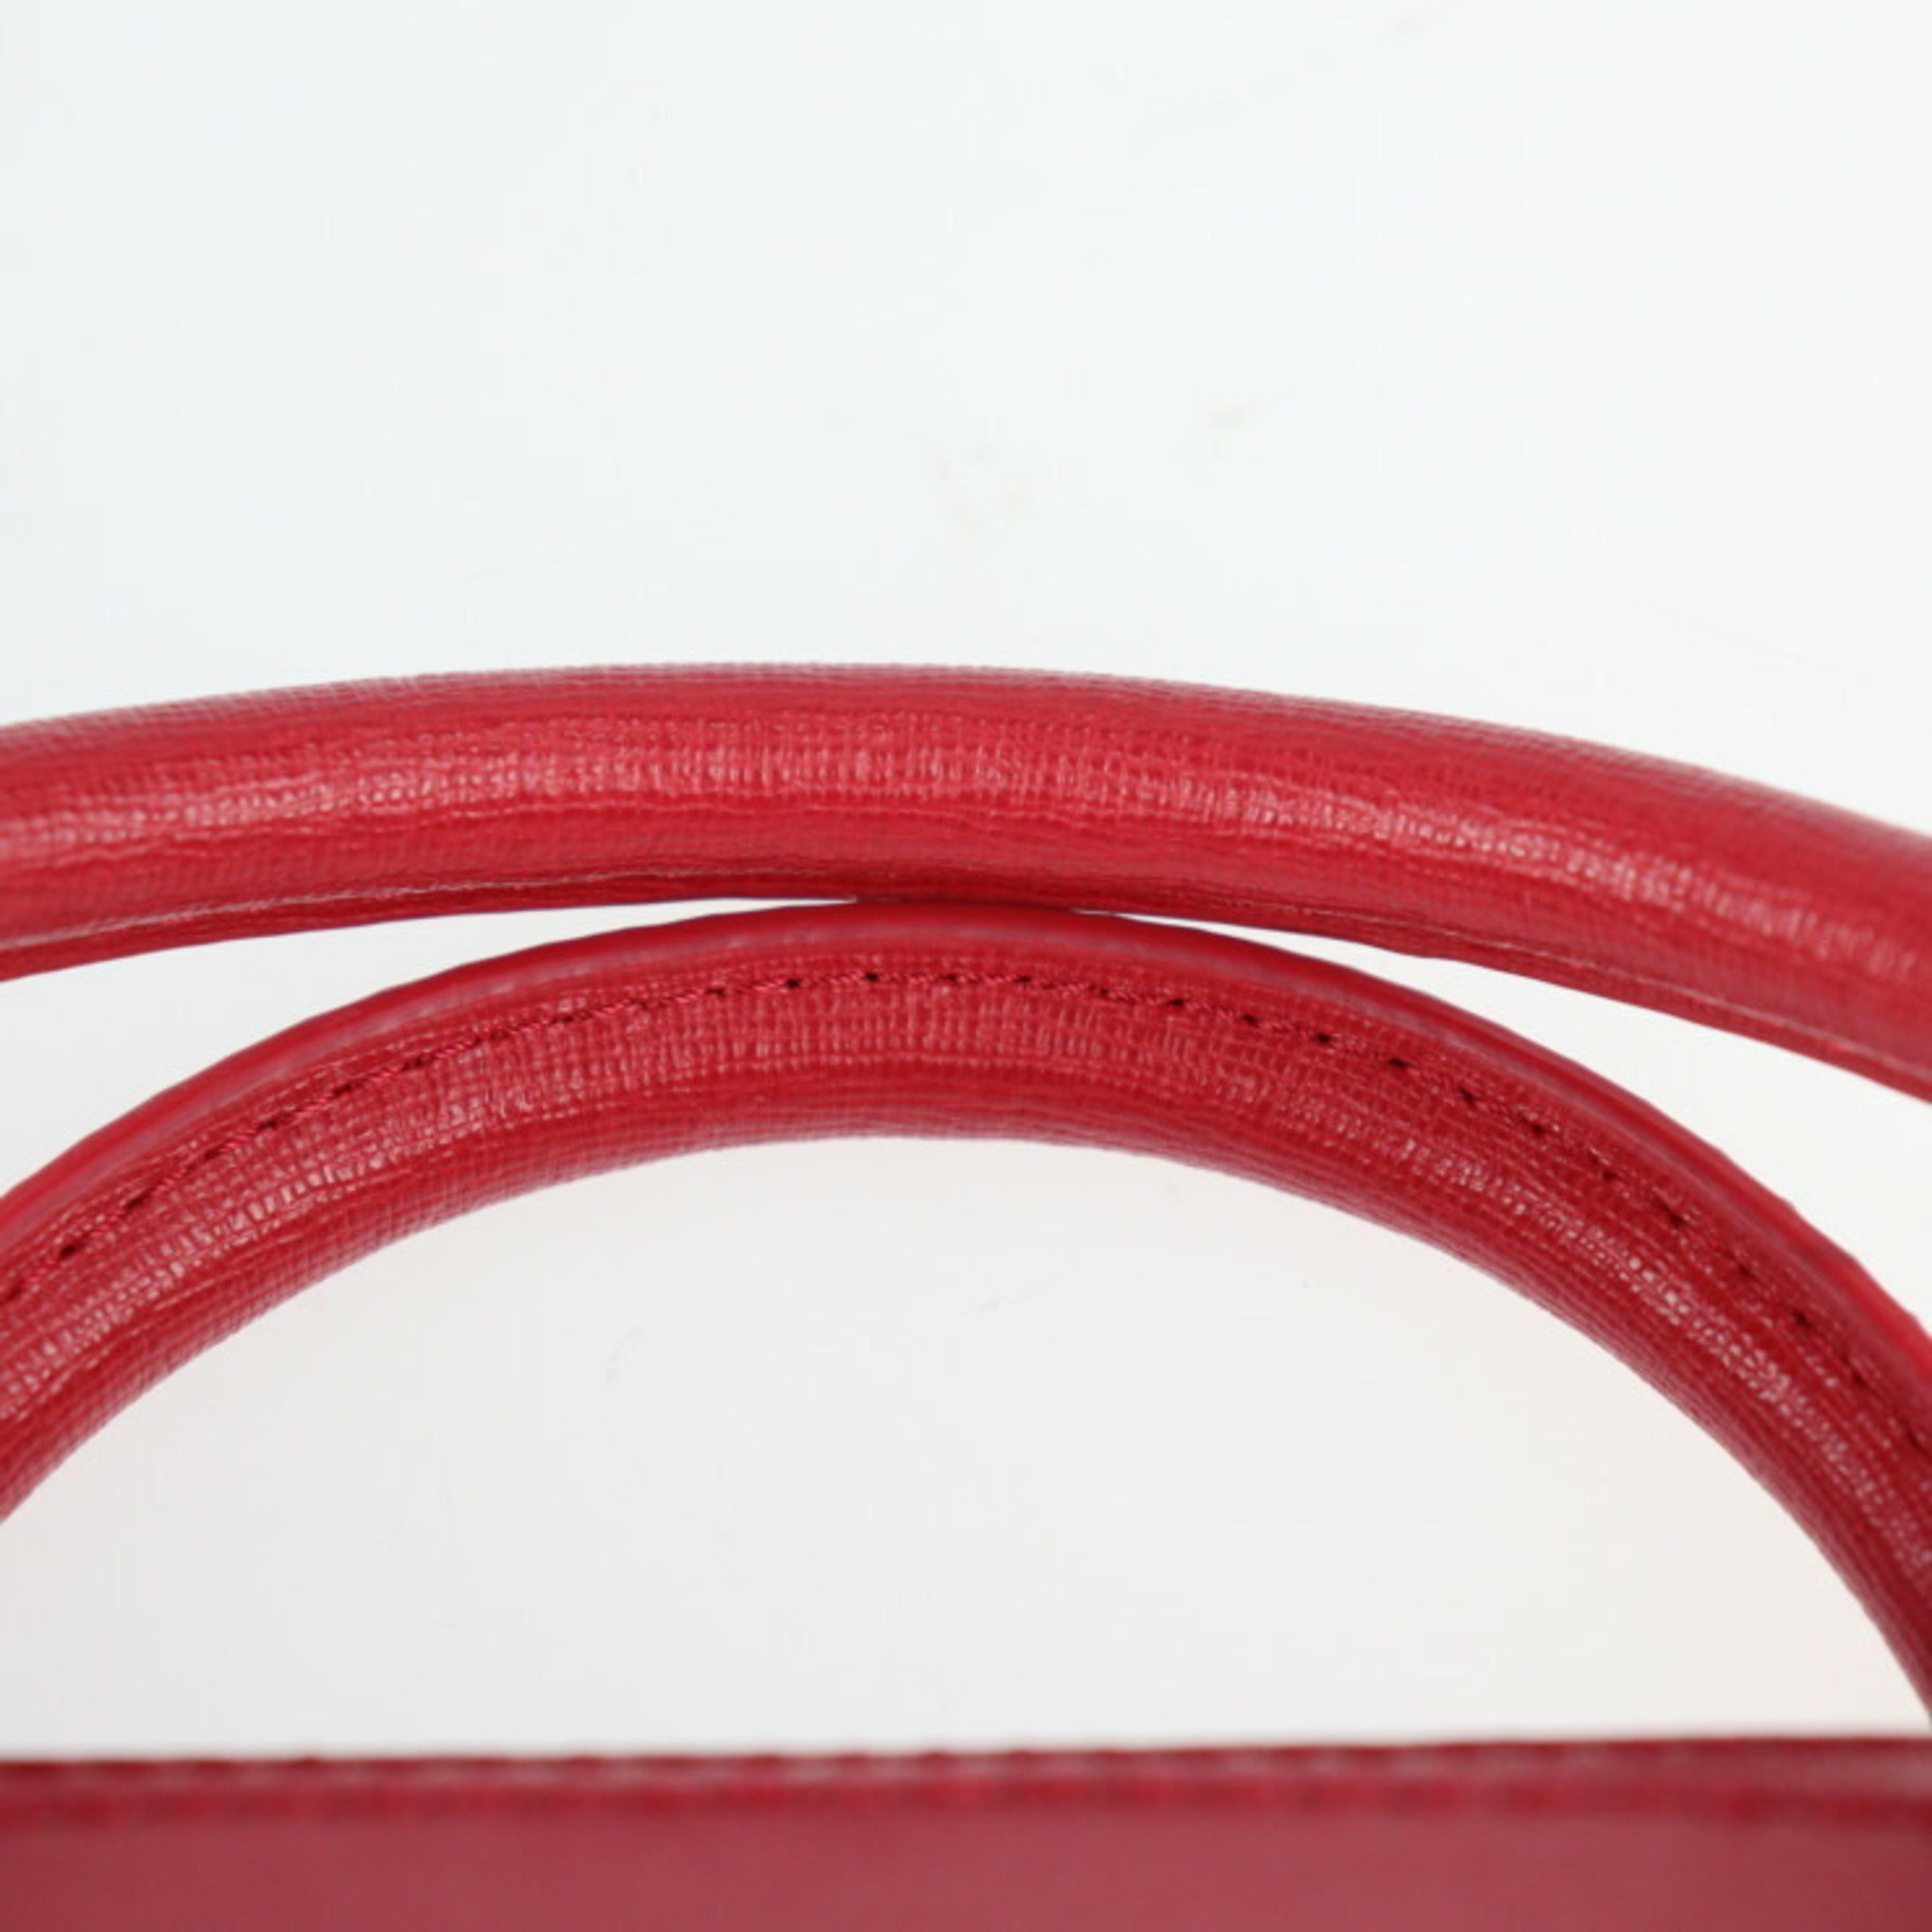 Furla Margot handbag BMAGBHL5B30SK1 leather ruby red system gold hardware 2WAY shoulder bag